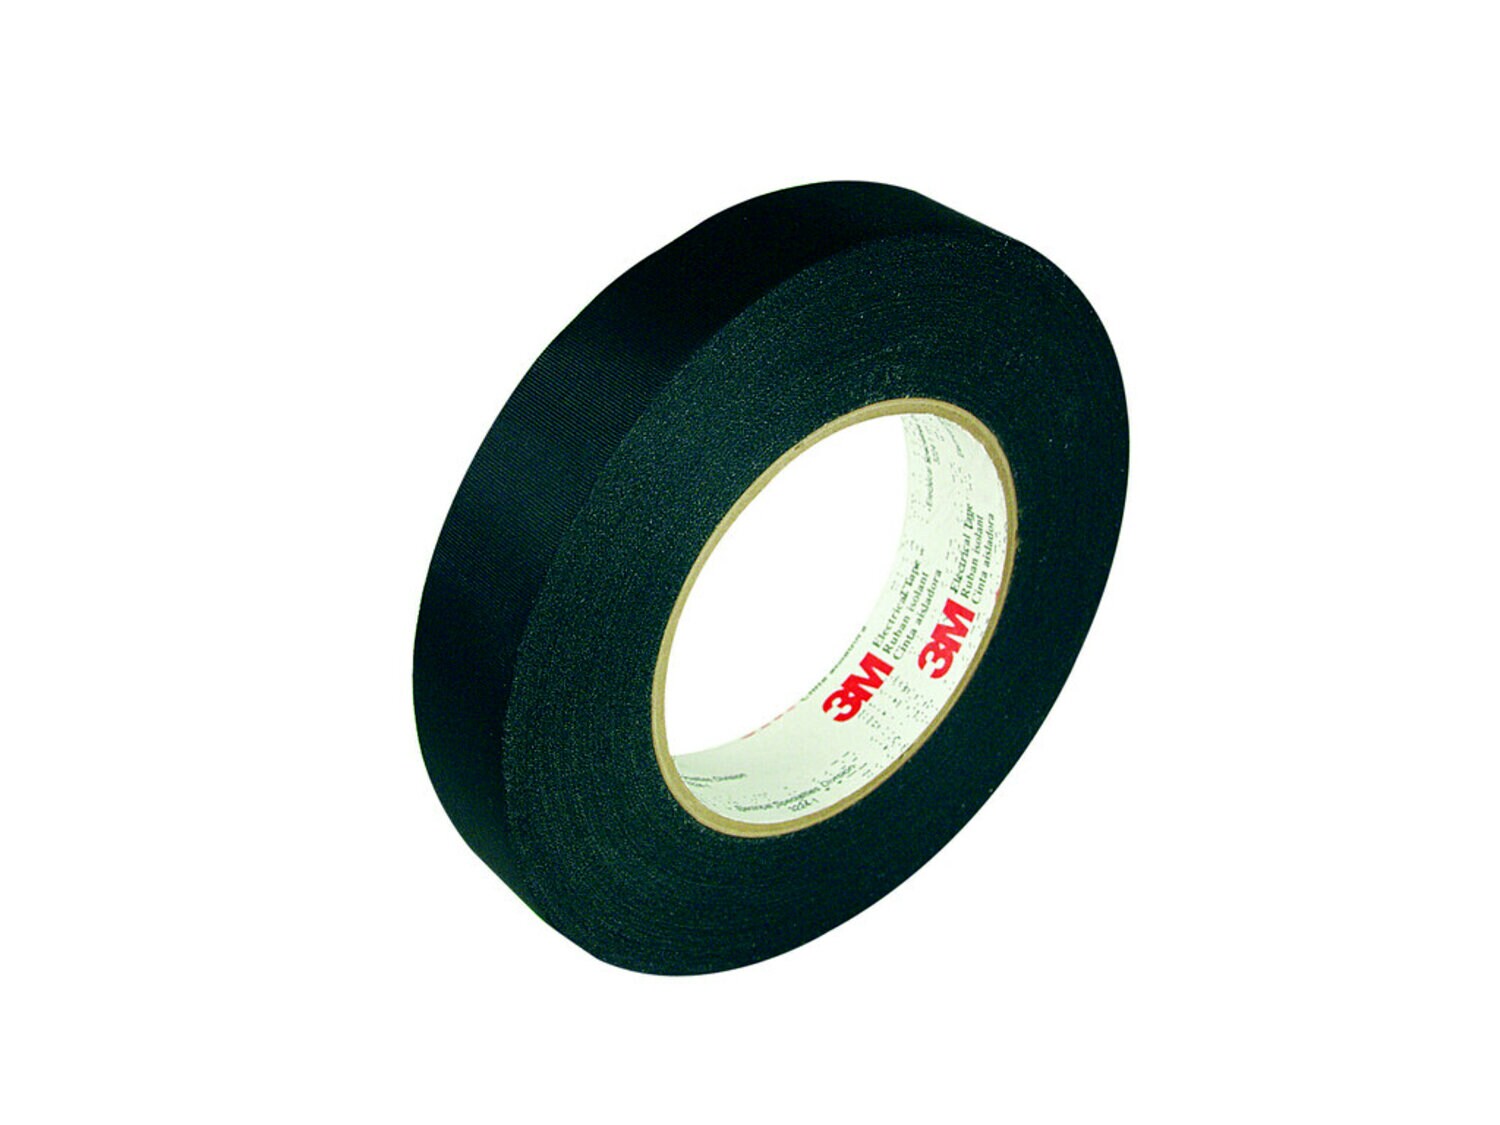 7010348992 - 3M Acetate Cloth Electrical Tape 11, 3/4 in x 72 yd, 3 in Paper Core,
Black, 48 Rolls/Case